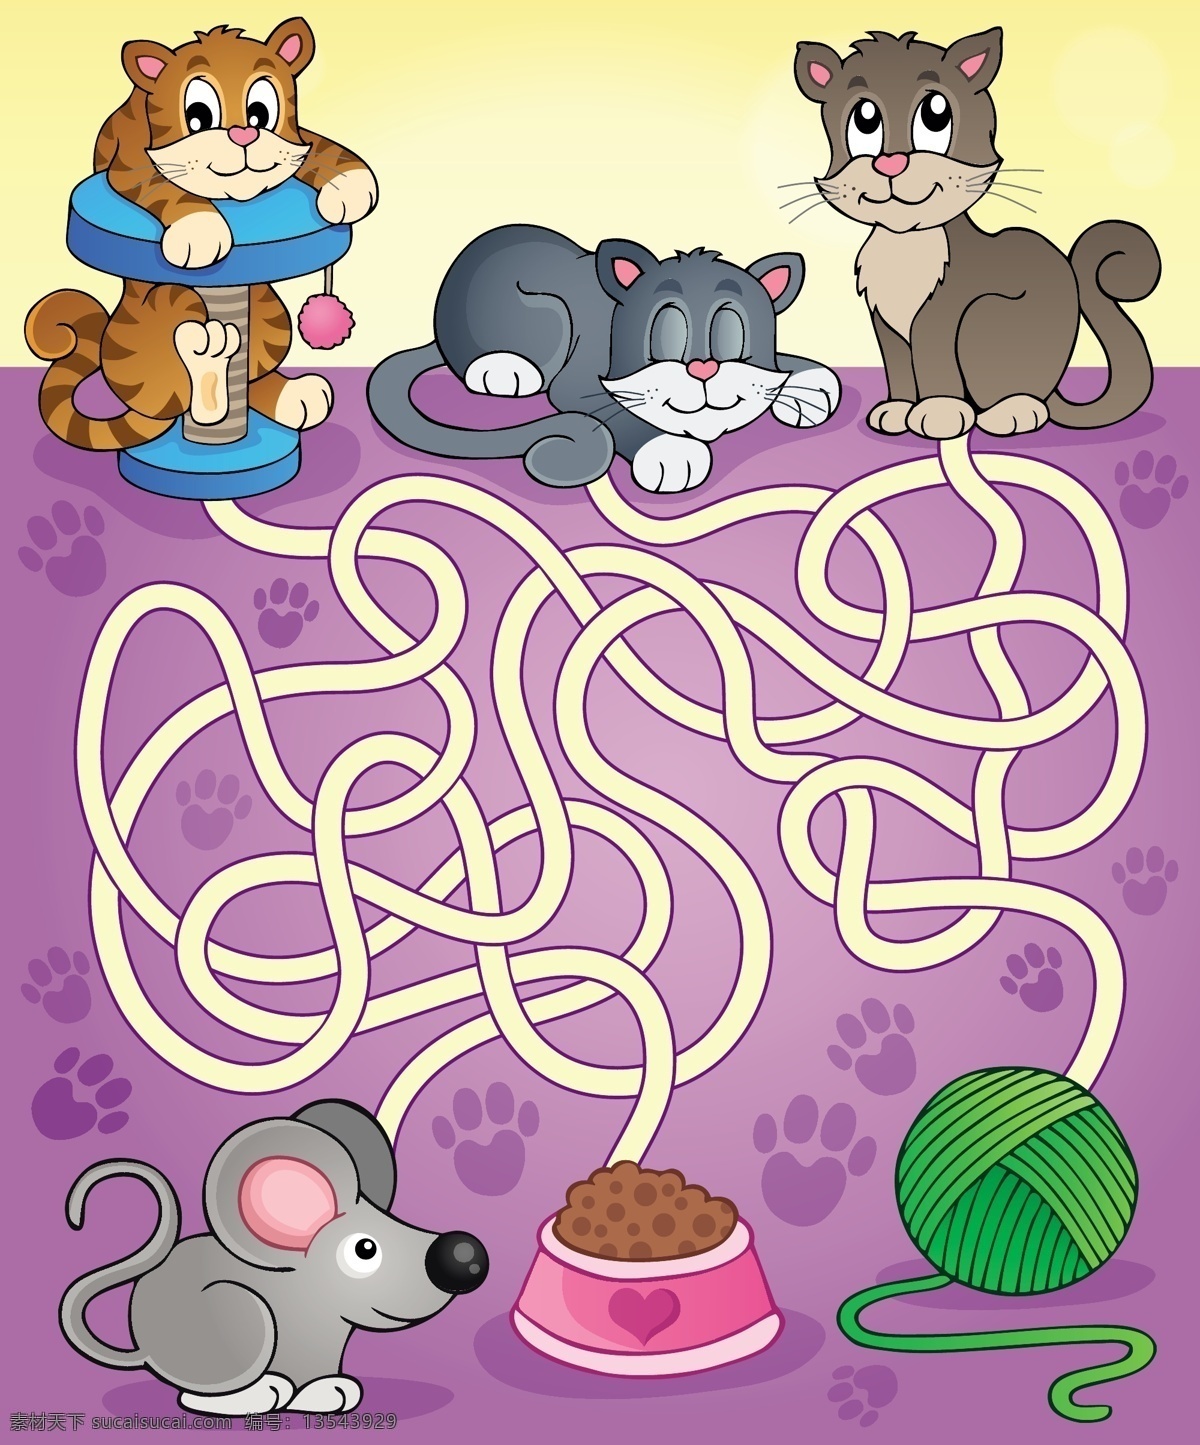 迷宫插图 手绘卡通插画 老鼠 猫 儿童绘画 卡通背景 背景底纹 文化艺术 绘画书法